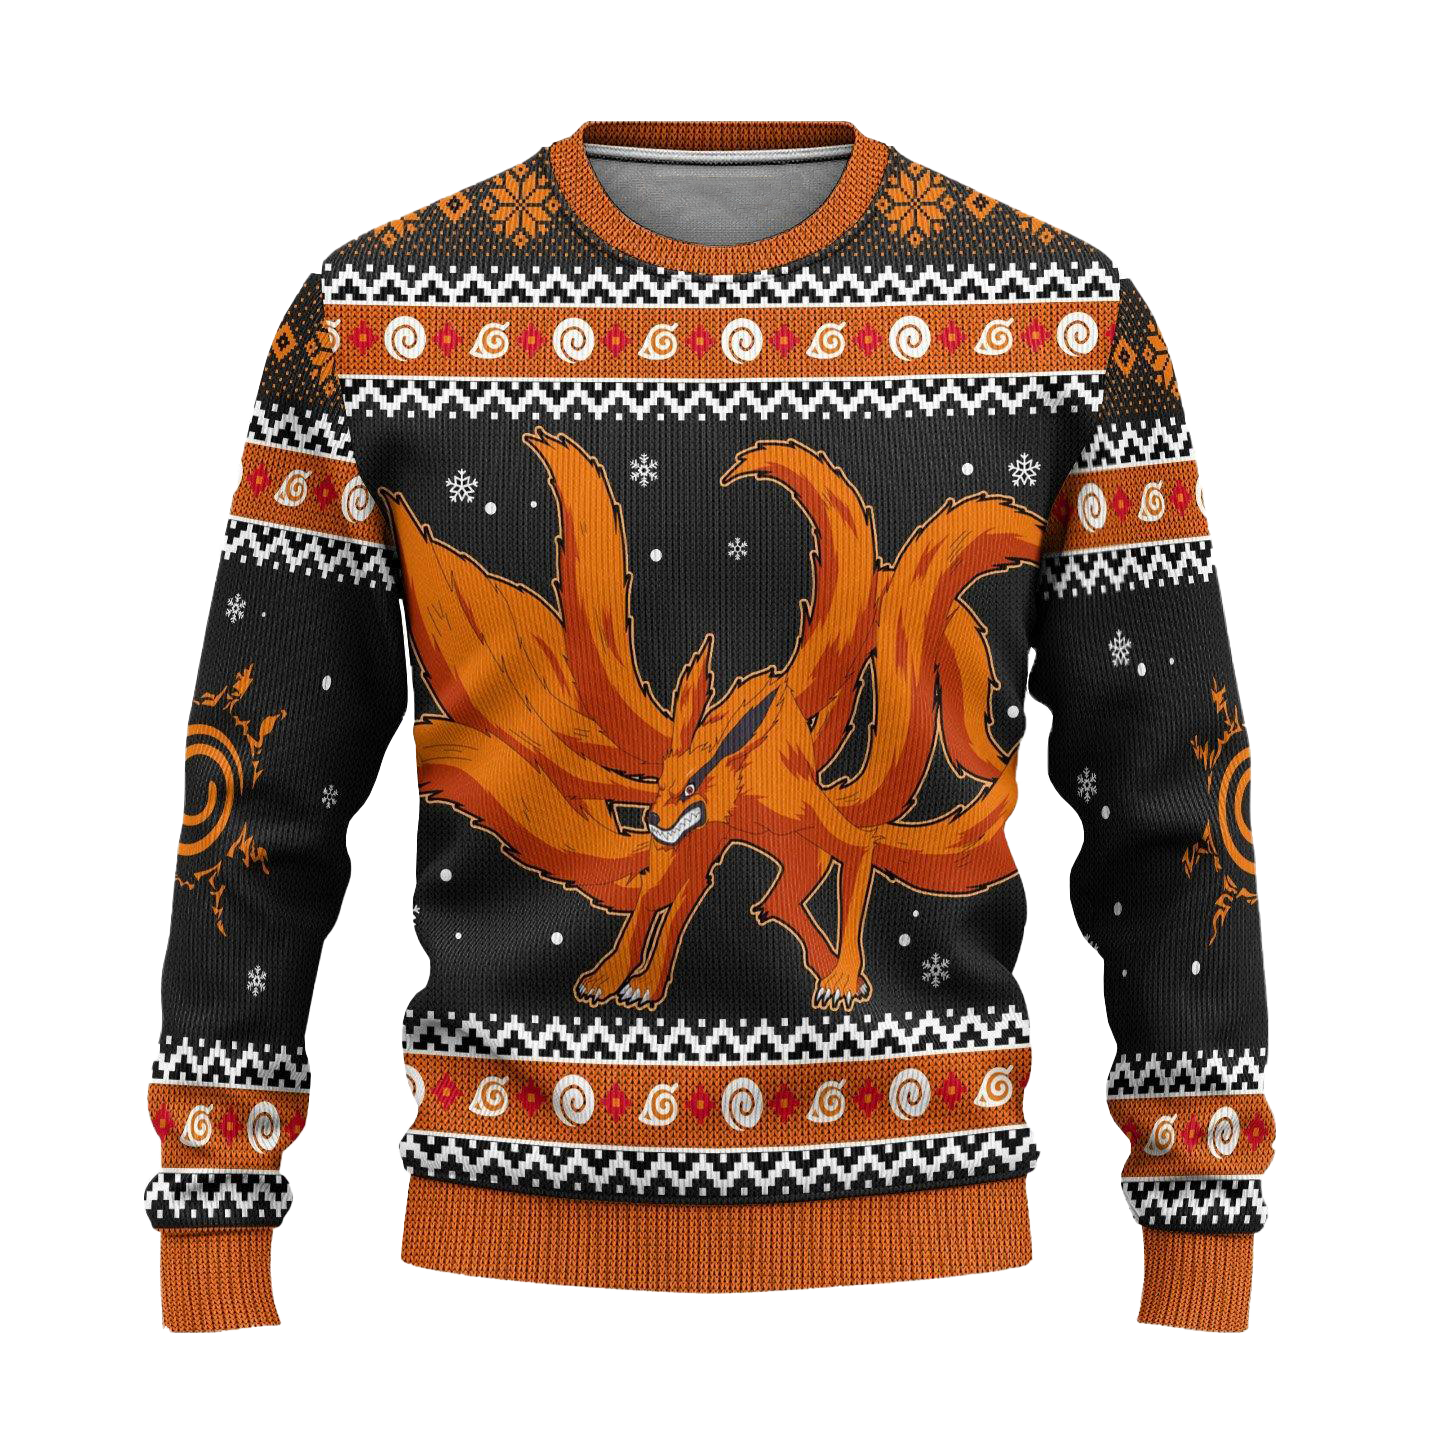 Kurama Naruto Anime Ugly Christmas Sweater Xmas Gift